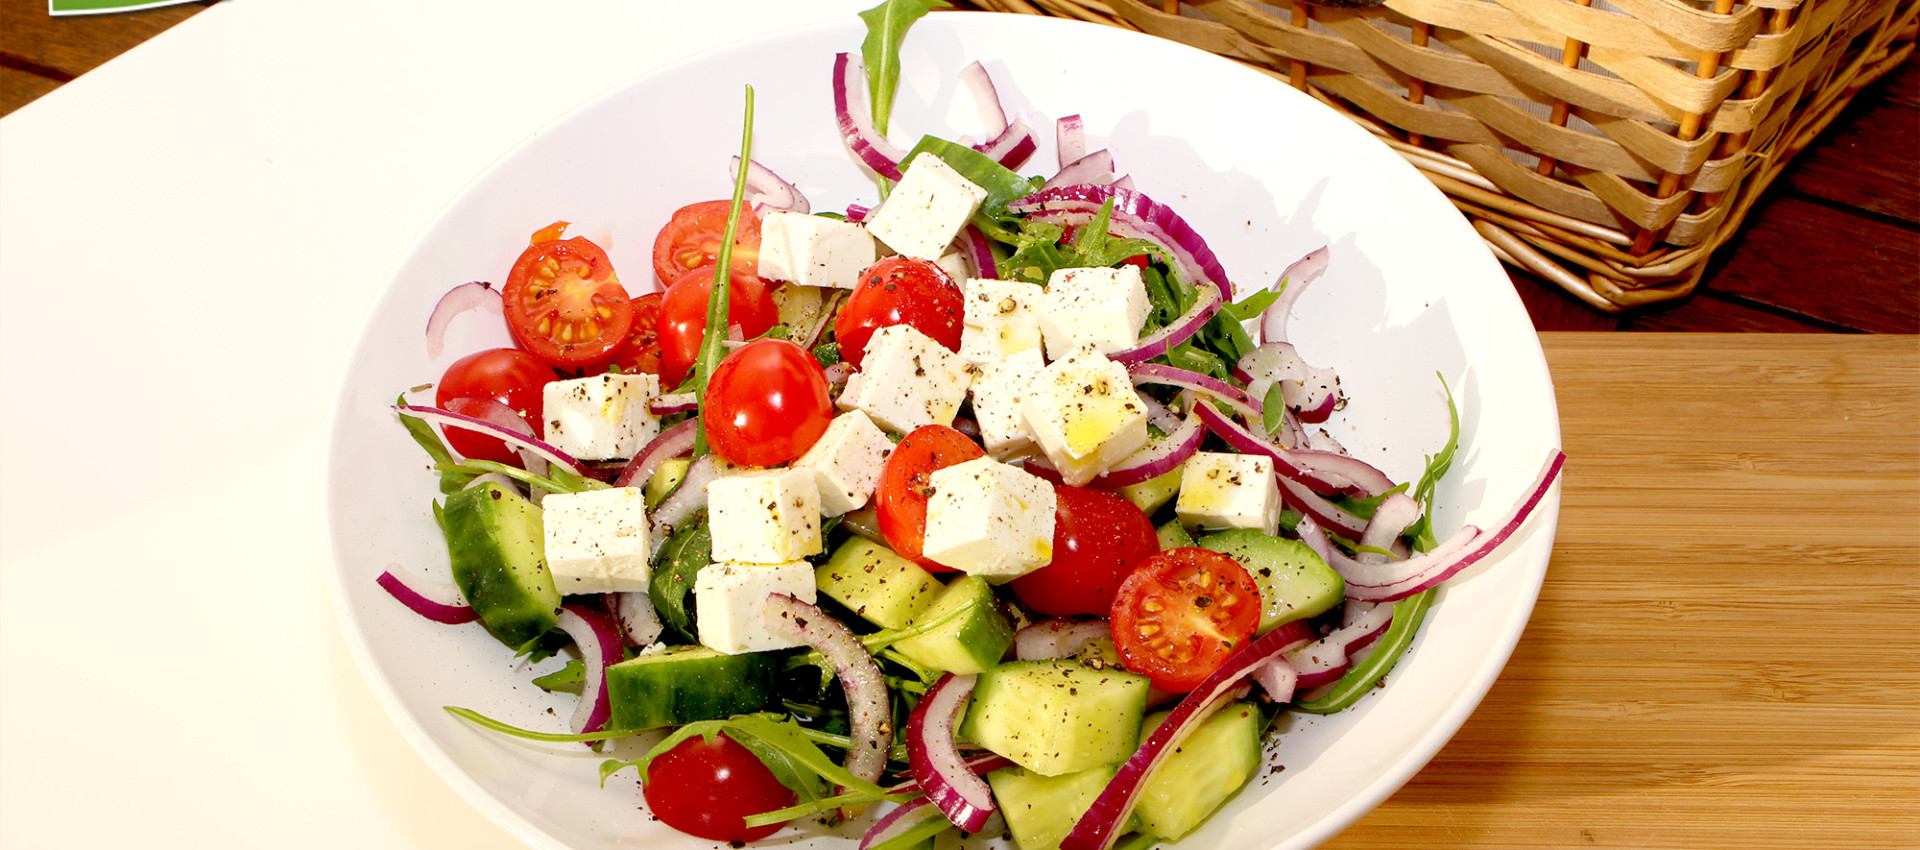 Griechischer Salat mit bestem Olivenöl | Kochbock.de